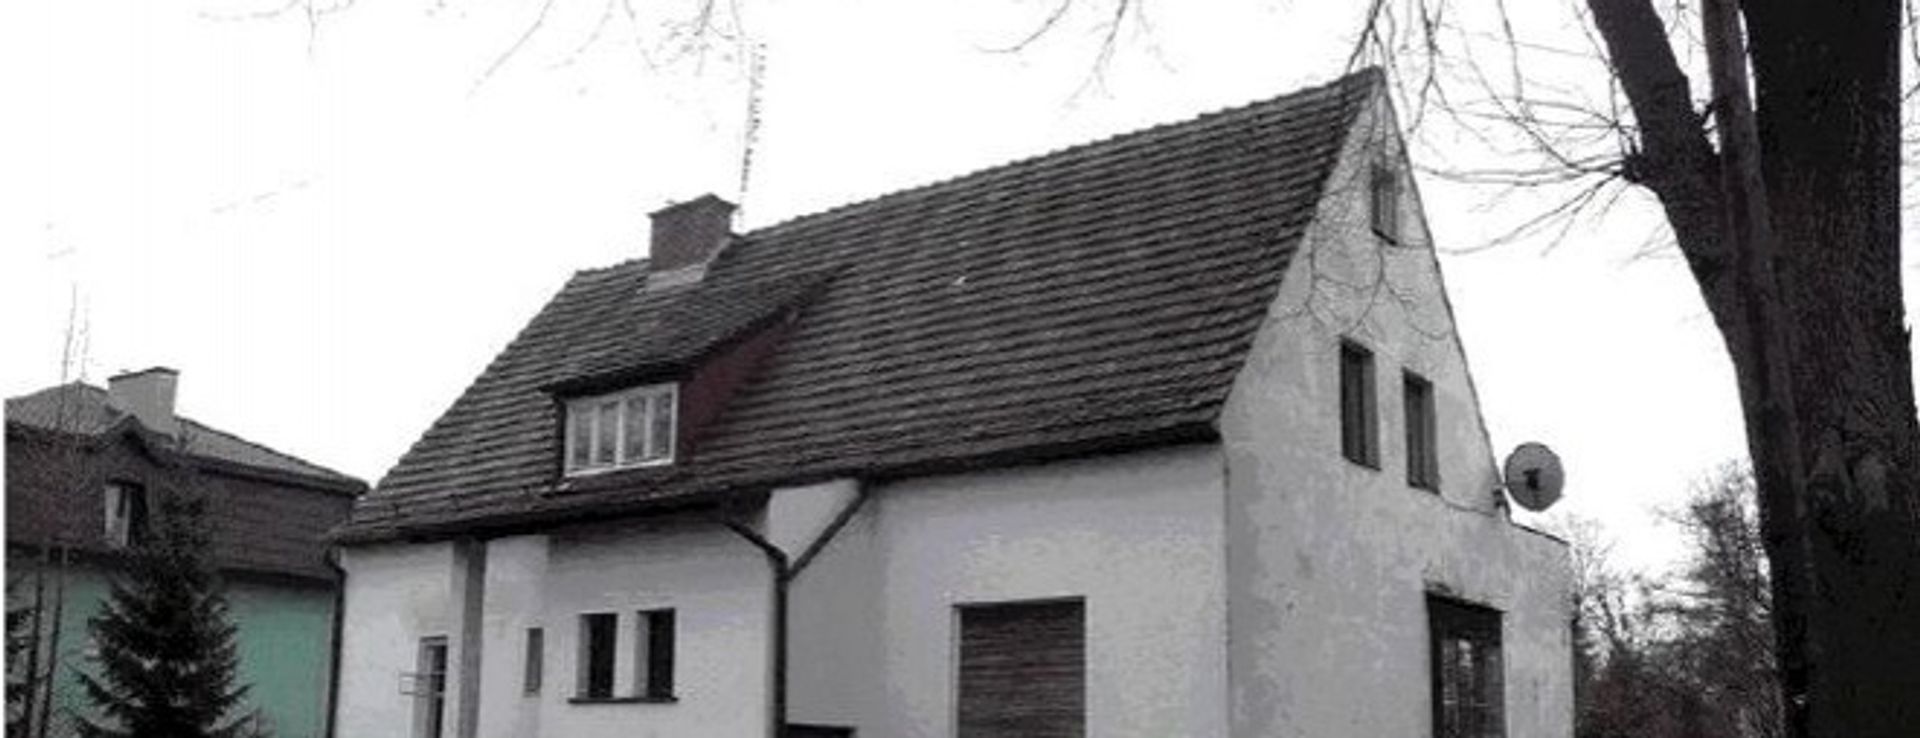  Nowy dom z lat 30 XX wieku? Wrocławscy architekci udowodnili, że to możliwe